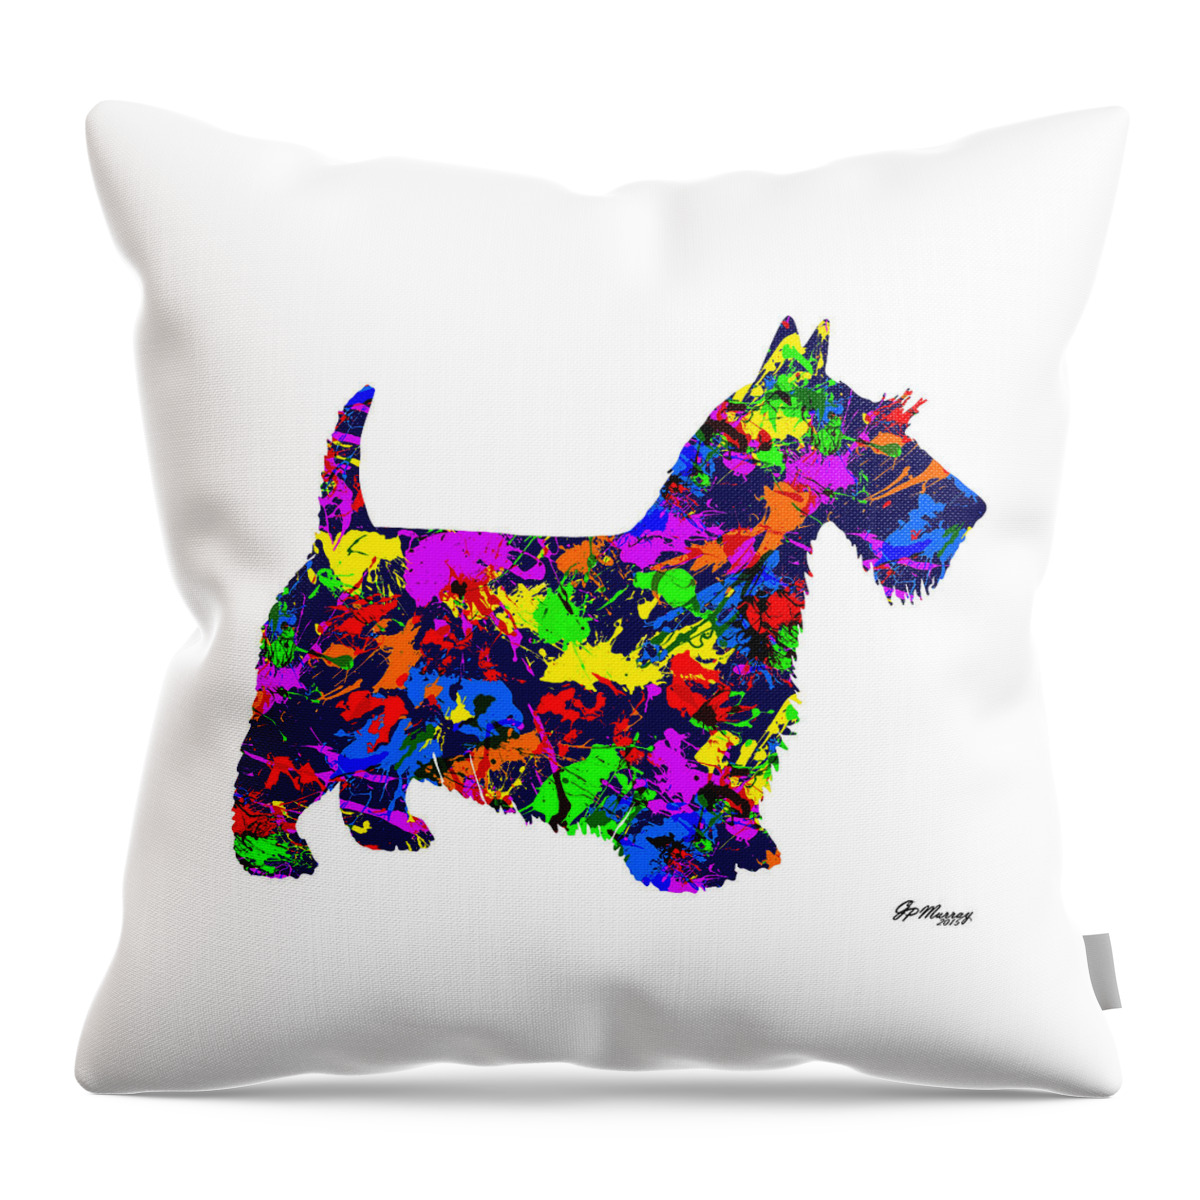 Paint Splatter Art Throw Pillow featuring the digital art Paint Splatter Scottish Terrier by Gregory Murray